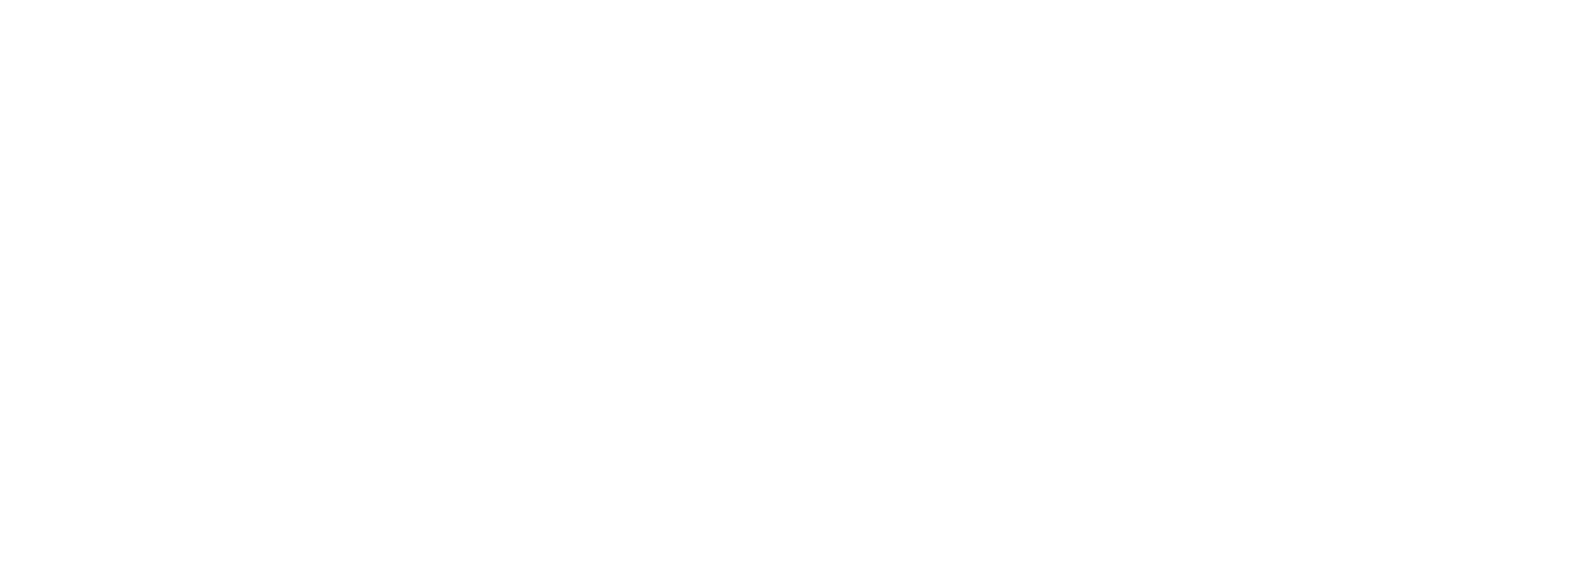 U.S. Silica logo large for dark backgrounds (transparent PNG)